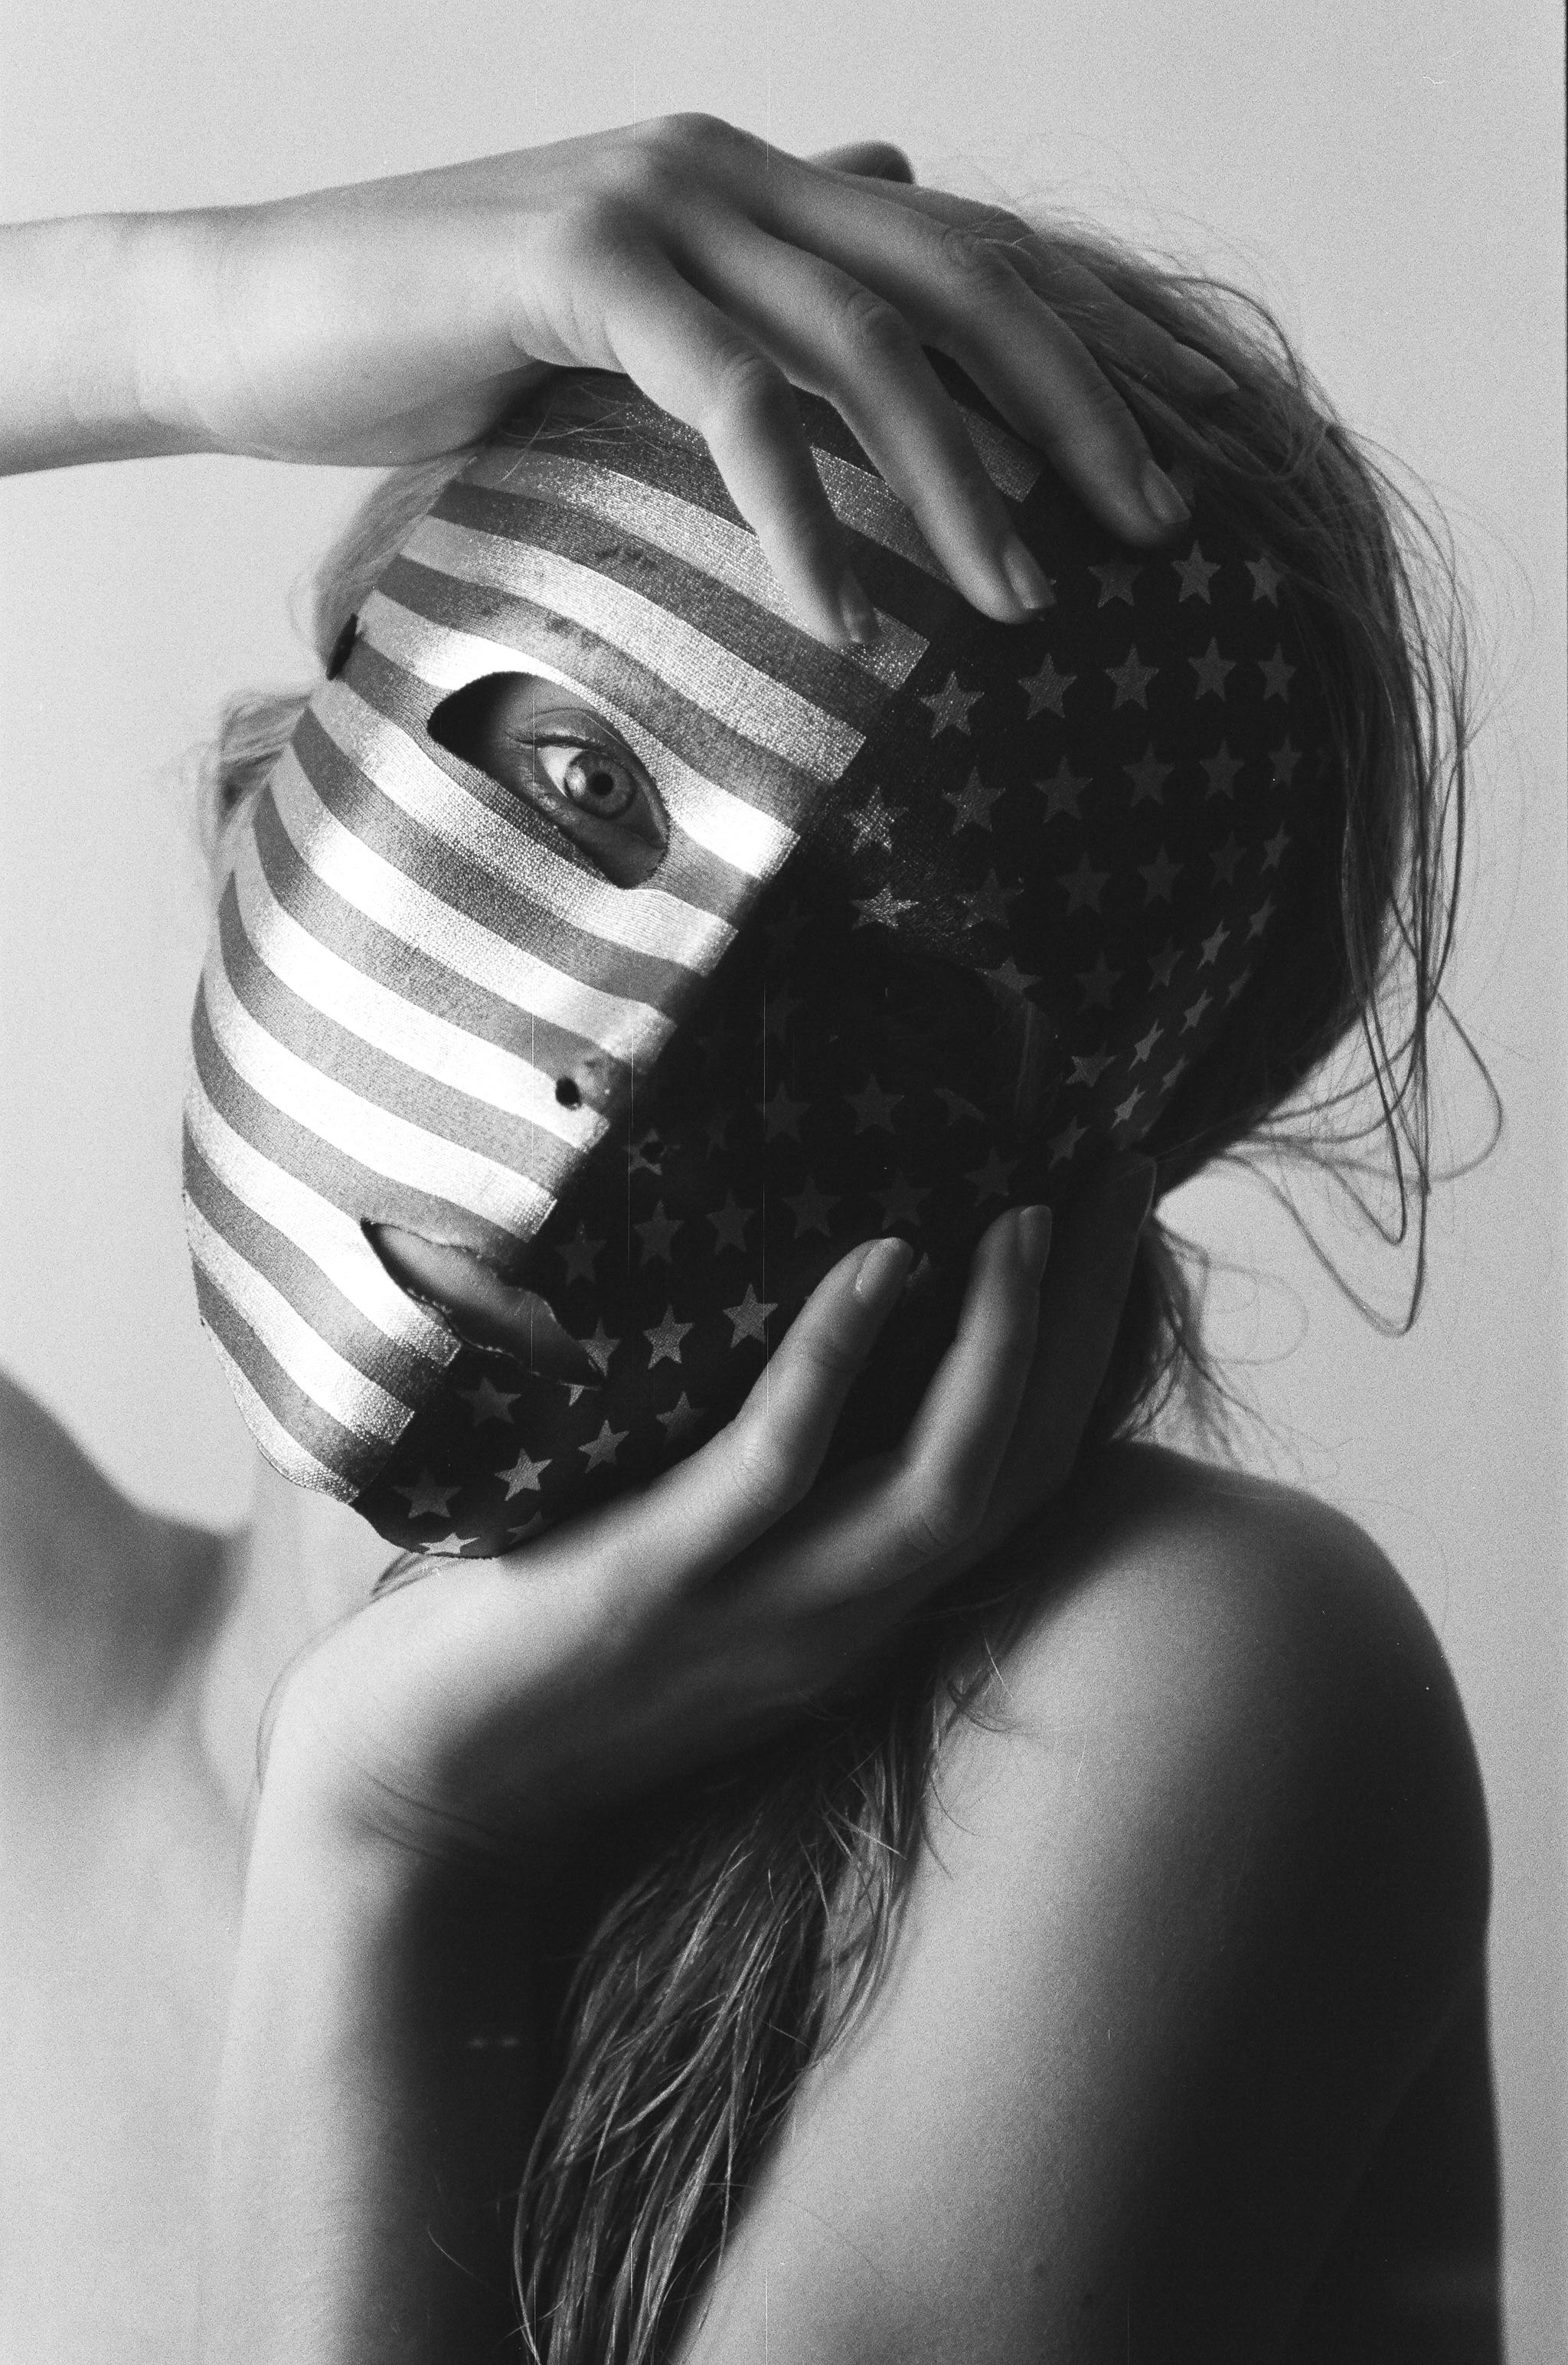 Sometimes Forever - America Mask